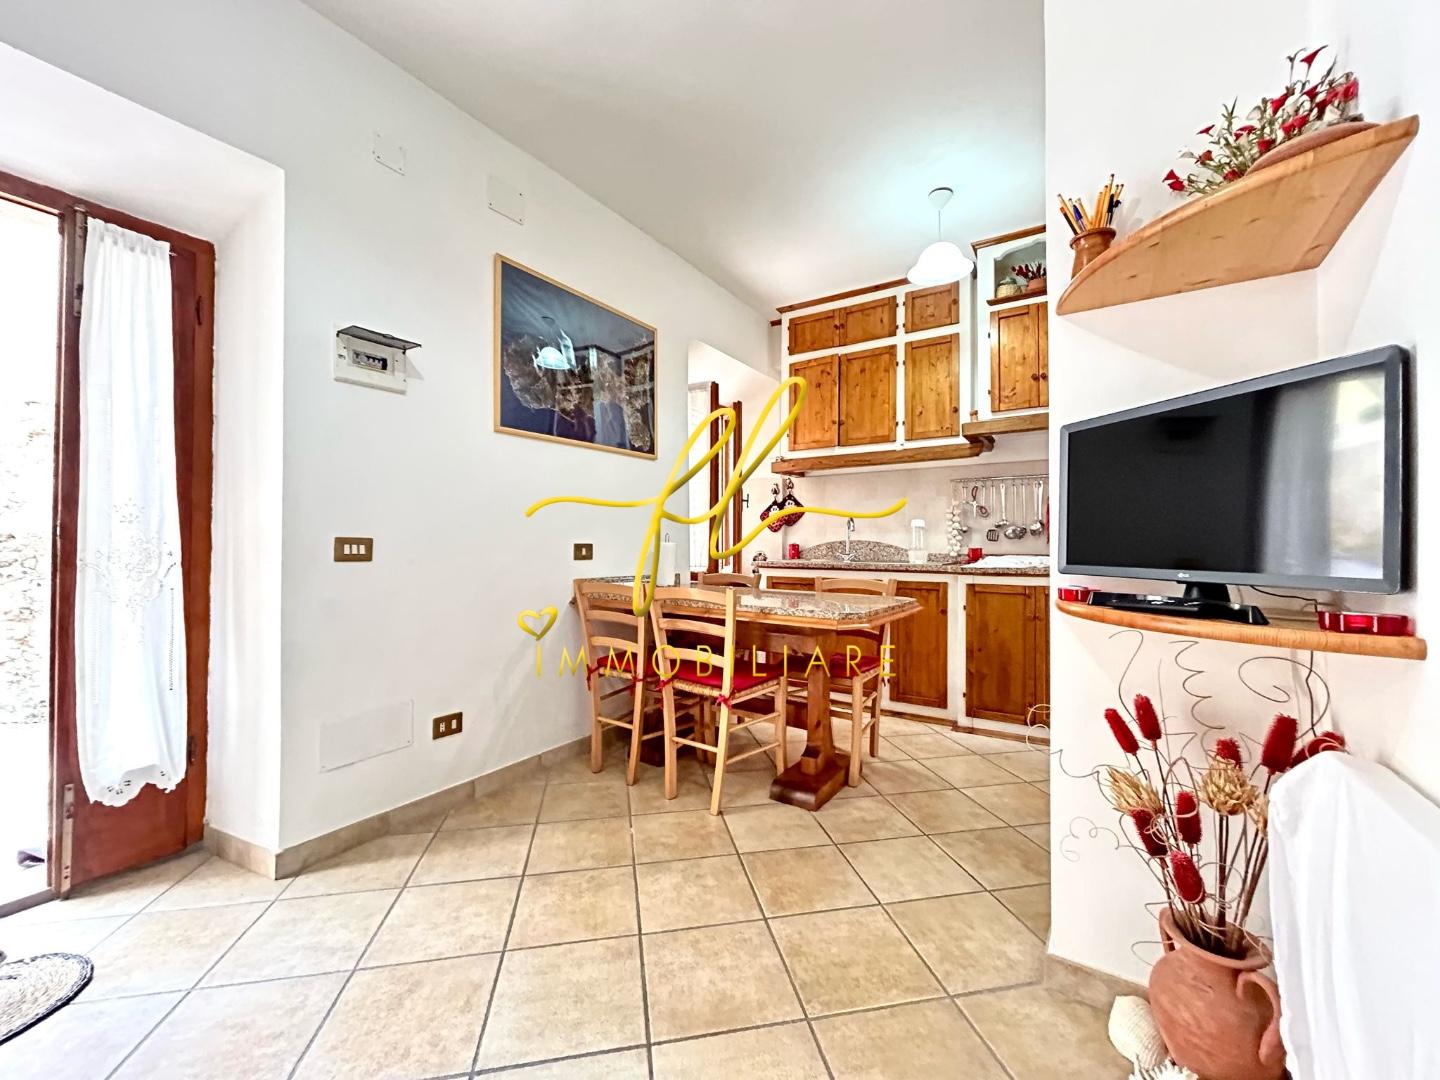 Appartamento in vendita a Rio nell'Elba, 3 locali, prezzo € 119.000 | PortaleAgenzieImmobiliari.it